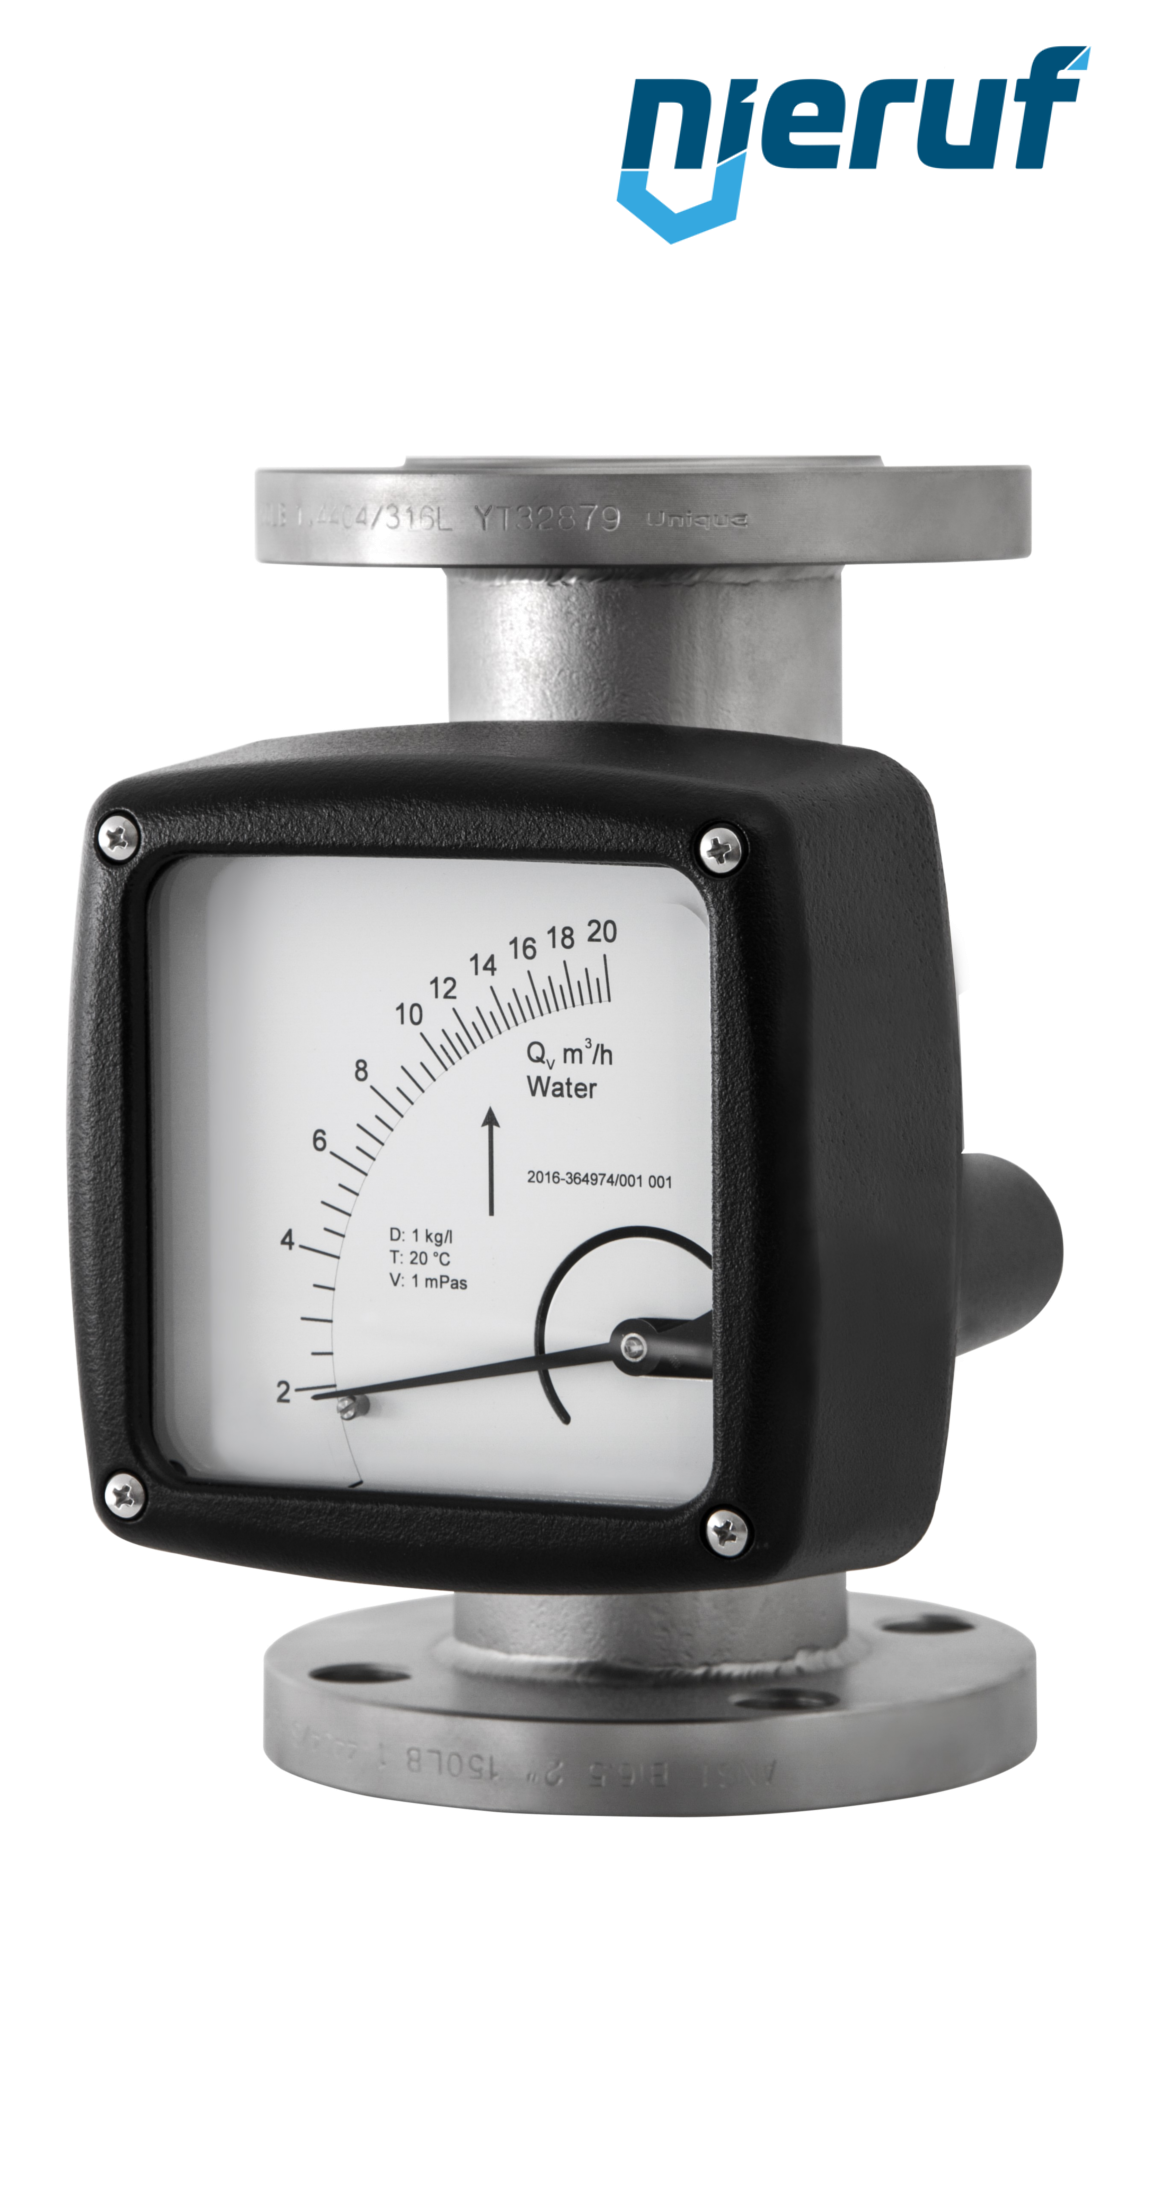 misuratore di flusso / rotametro completamente in metallo DN20-attacco 400,0 - 4000,0 l/h tubo DN25 acqua